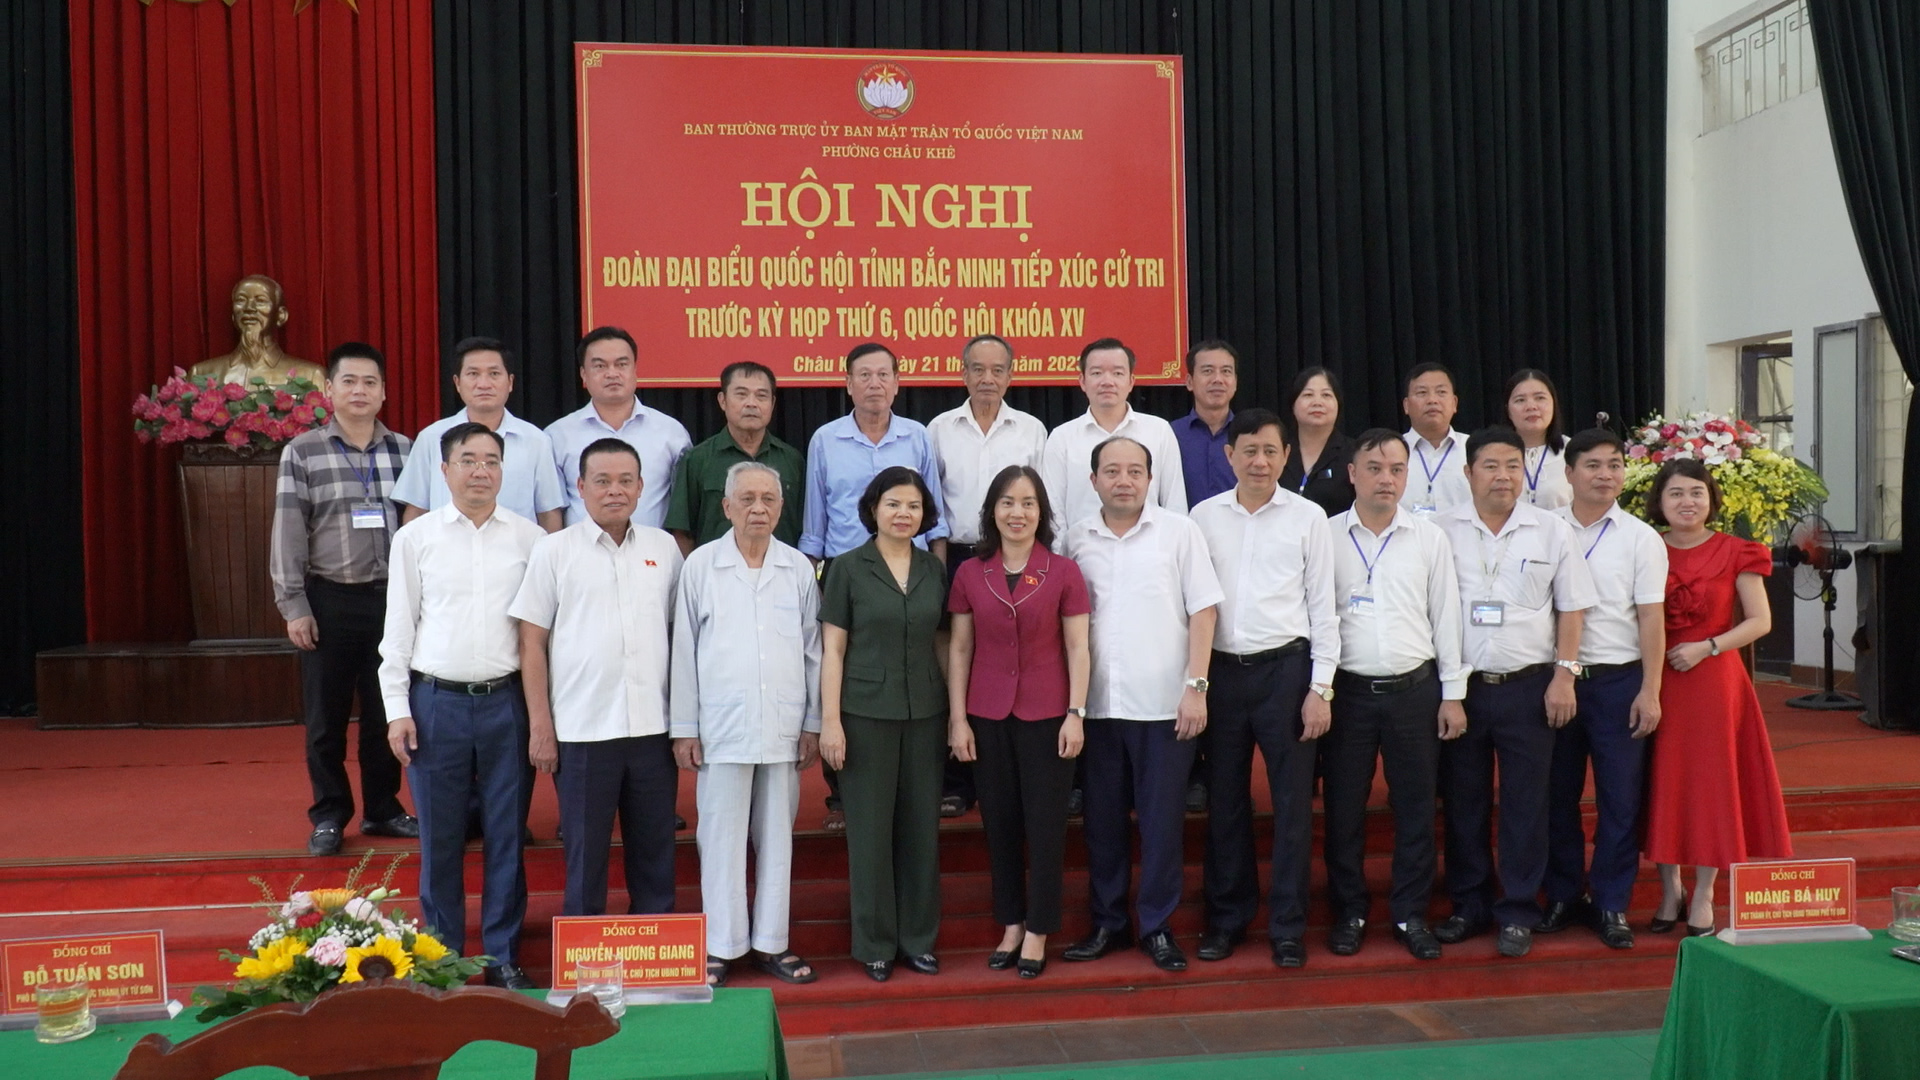 Đoàn đại biểu Quốc hội tỉnh Bắc Ninh tiếp xúc cử tri phường Châu Khê